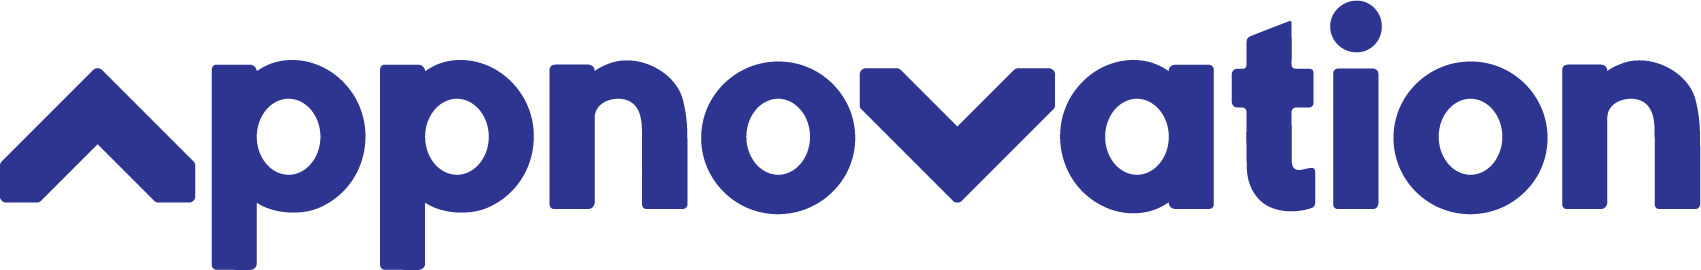 Logo Appnovation